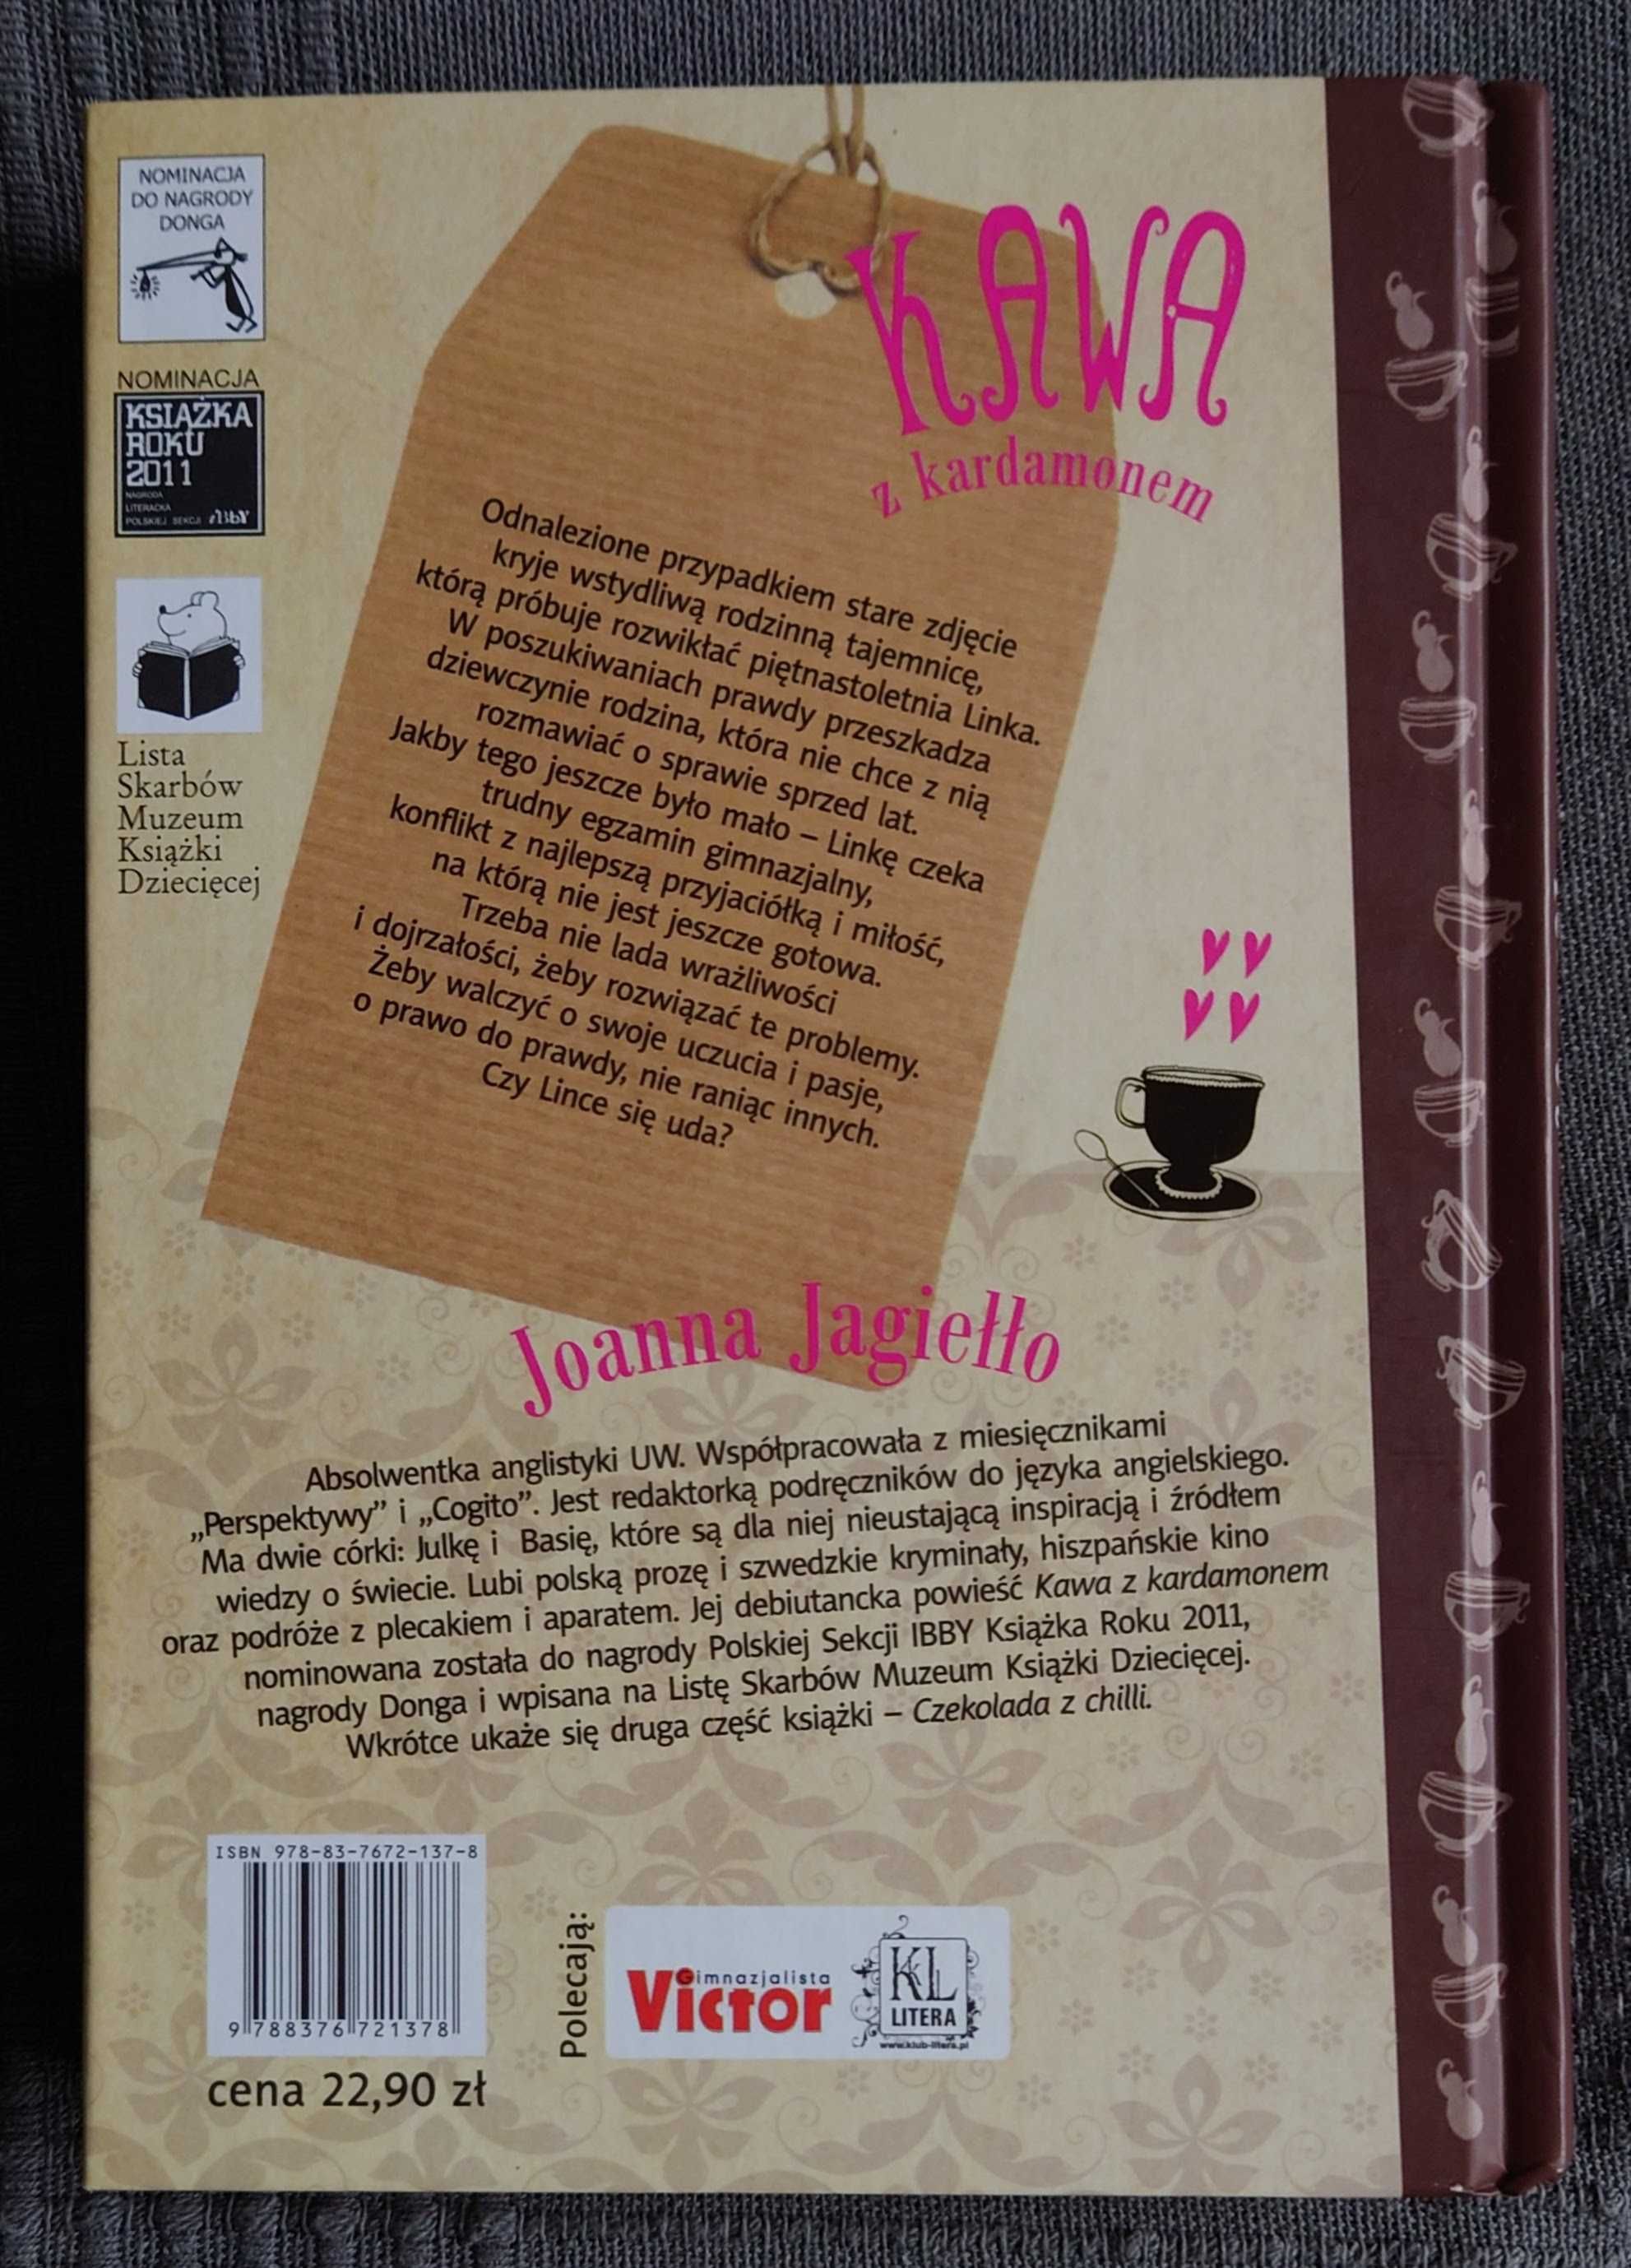 Książka JOANNA JAGIEŁŁO "Kawa z kardamonem"